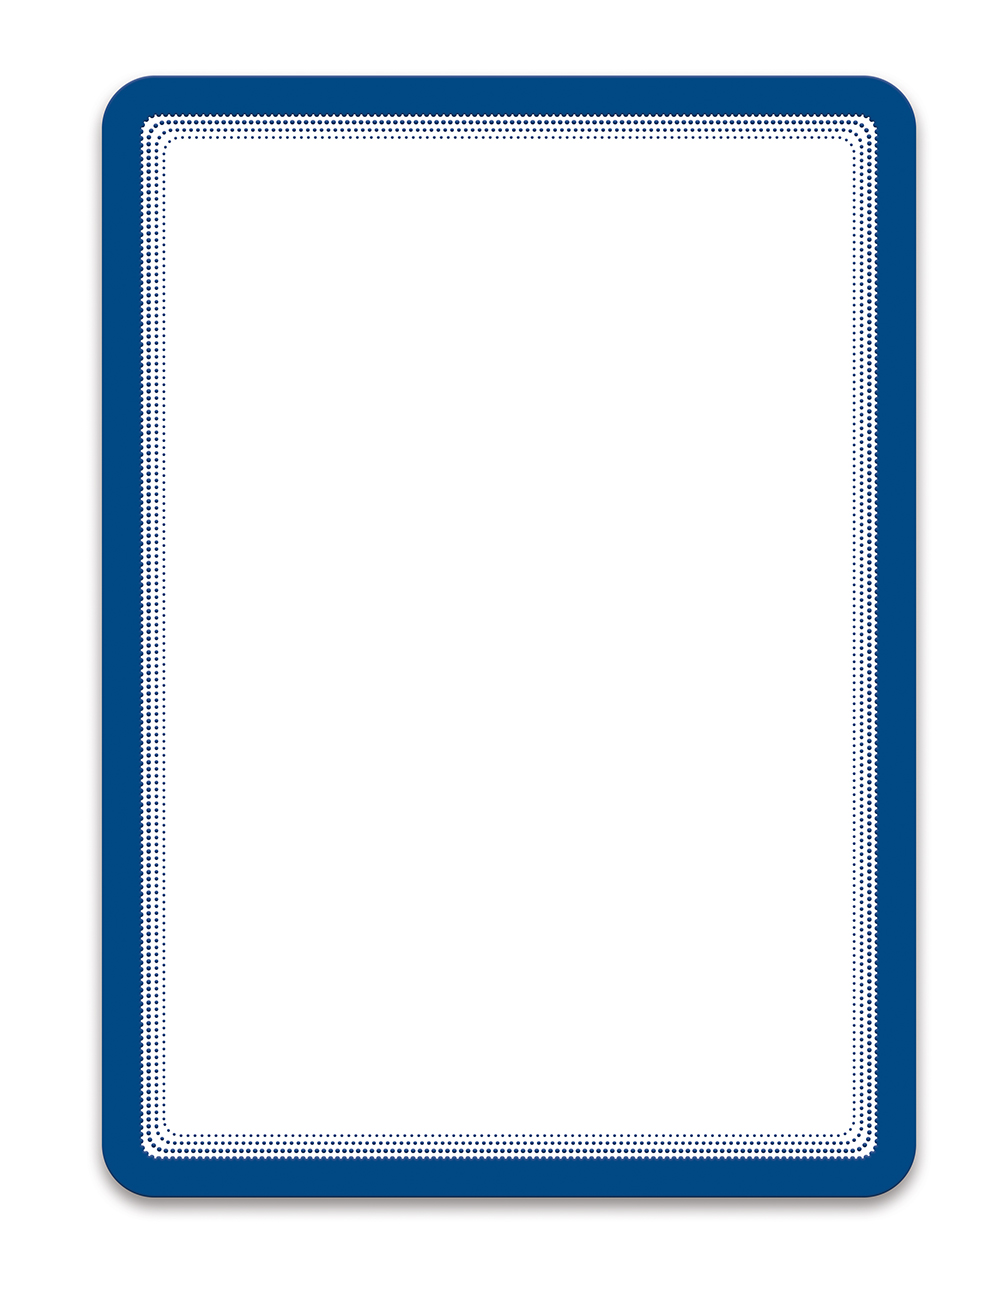 Tarifold Magneto - samolepicí rámeček, A4, modrý - 2 ks